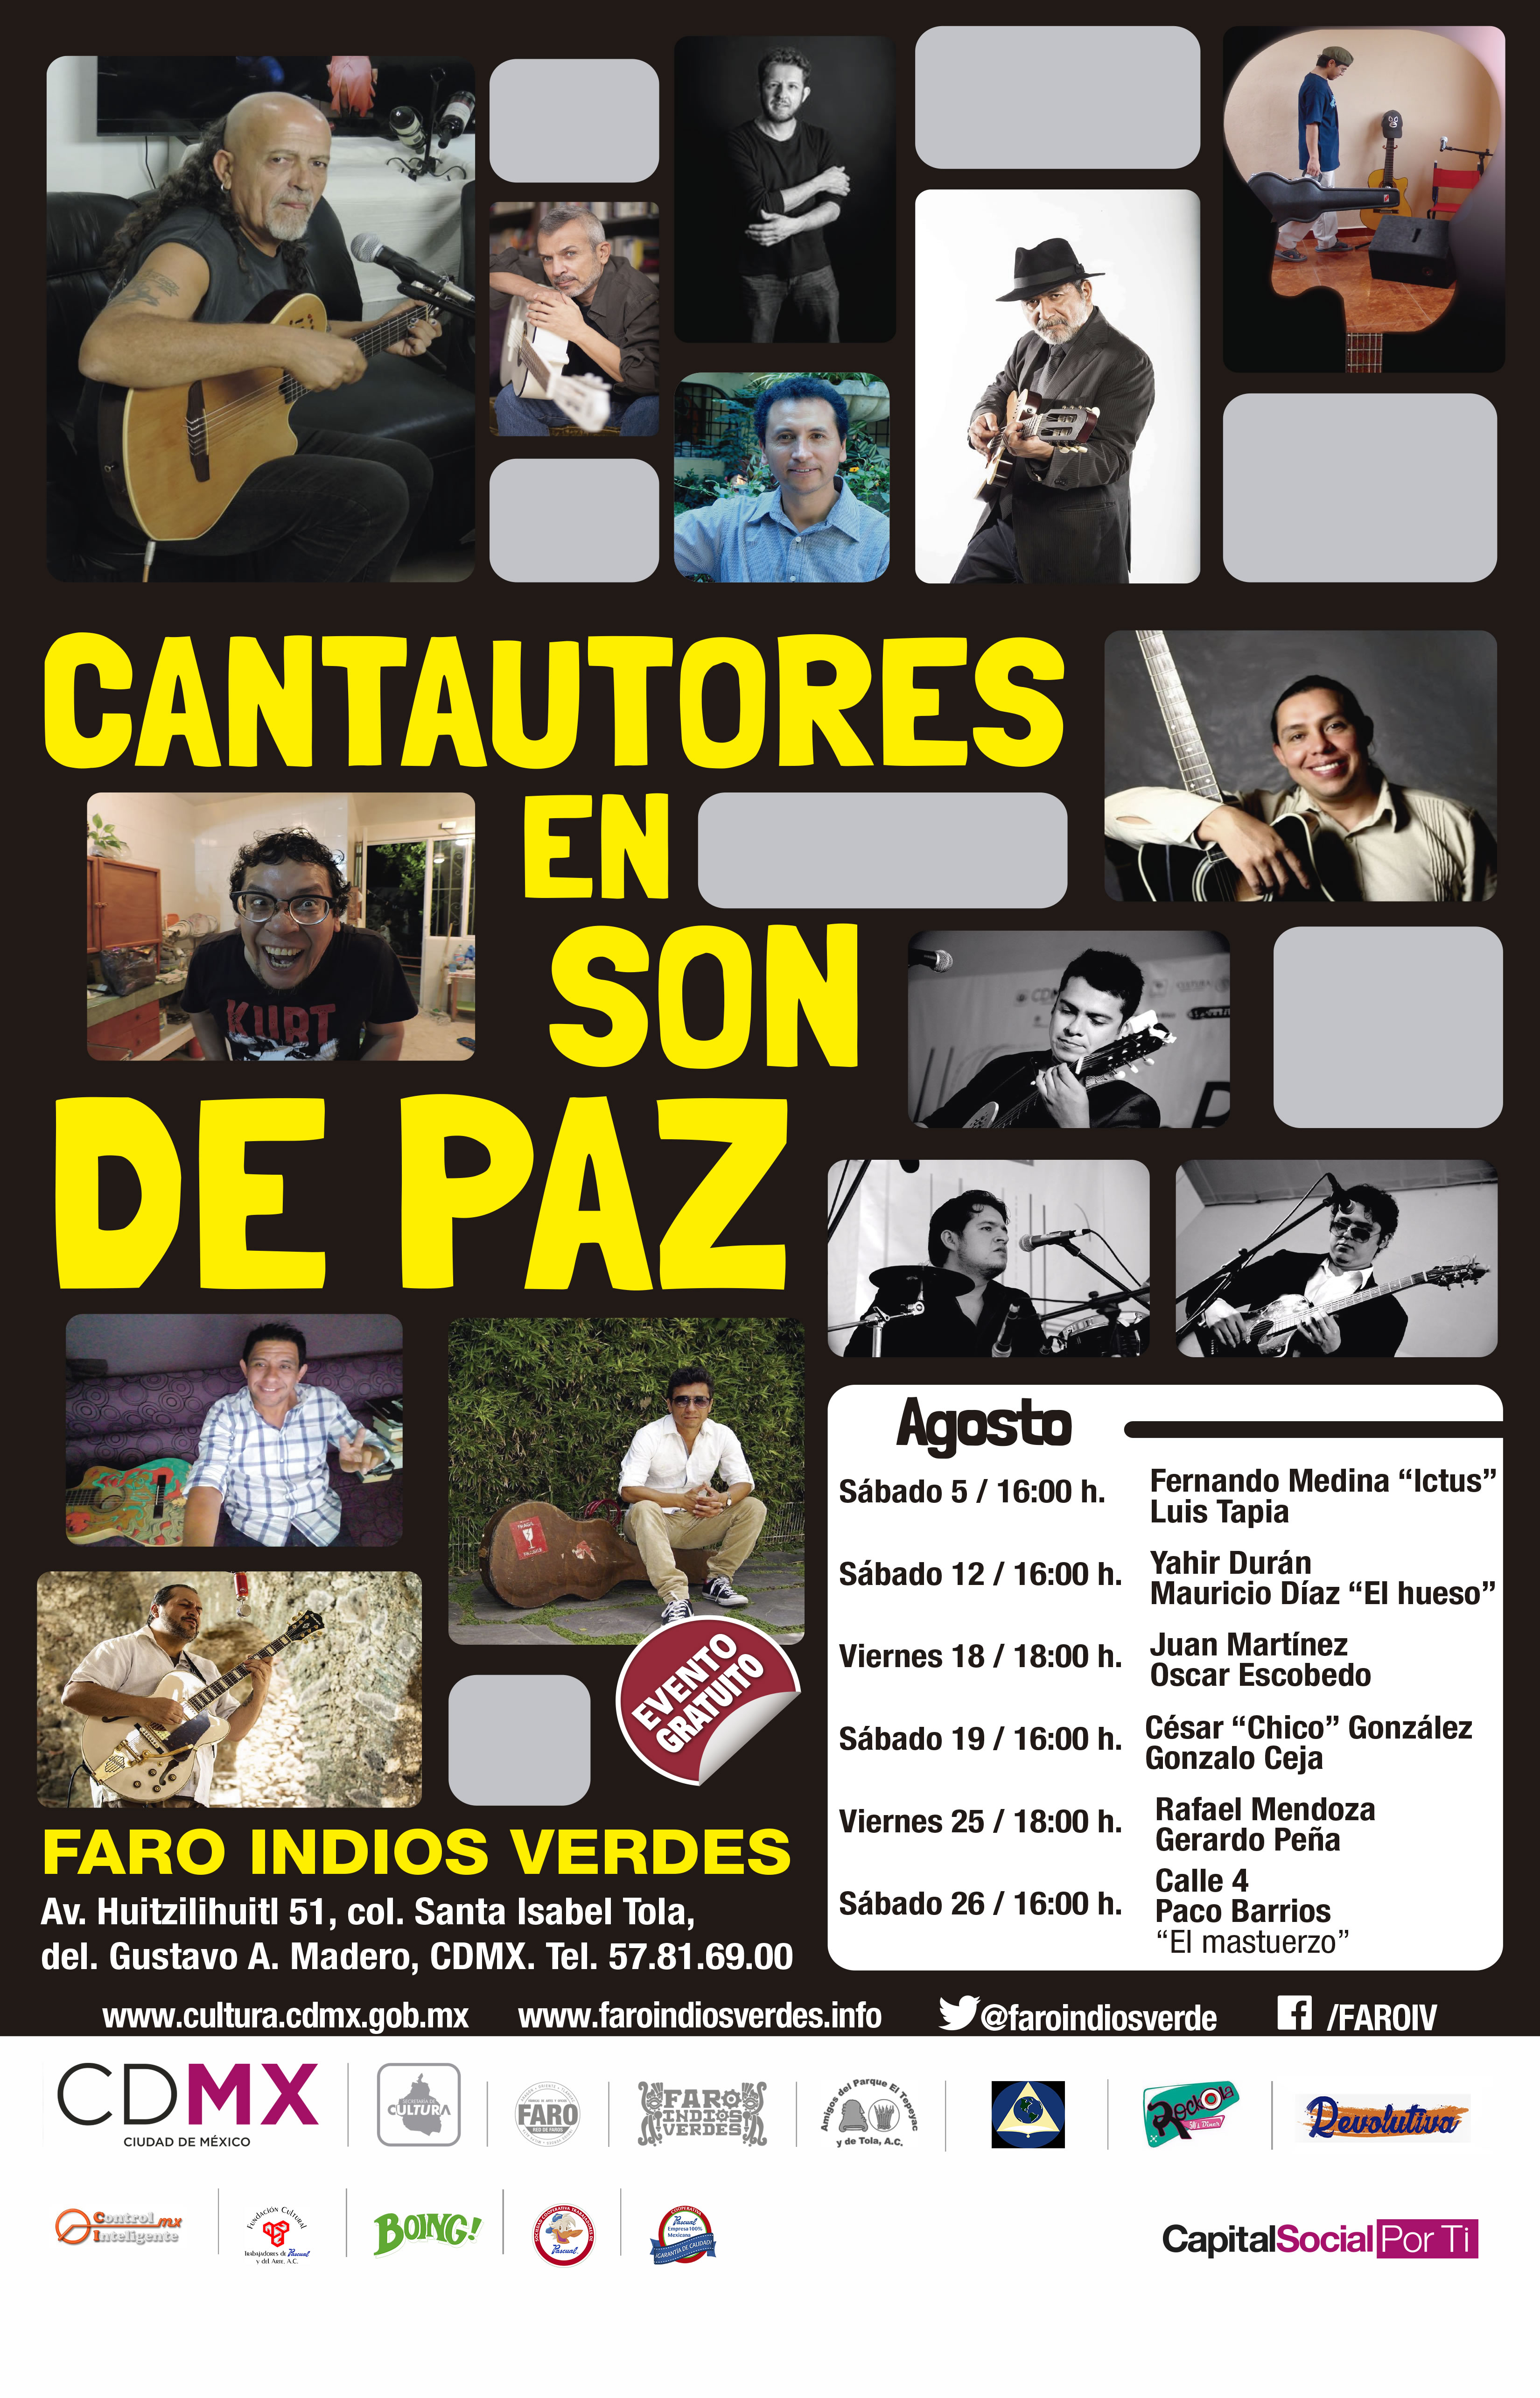 Faro Indios Verdes alista Festival de Trova Cantautores en Son de Paz